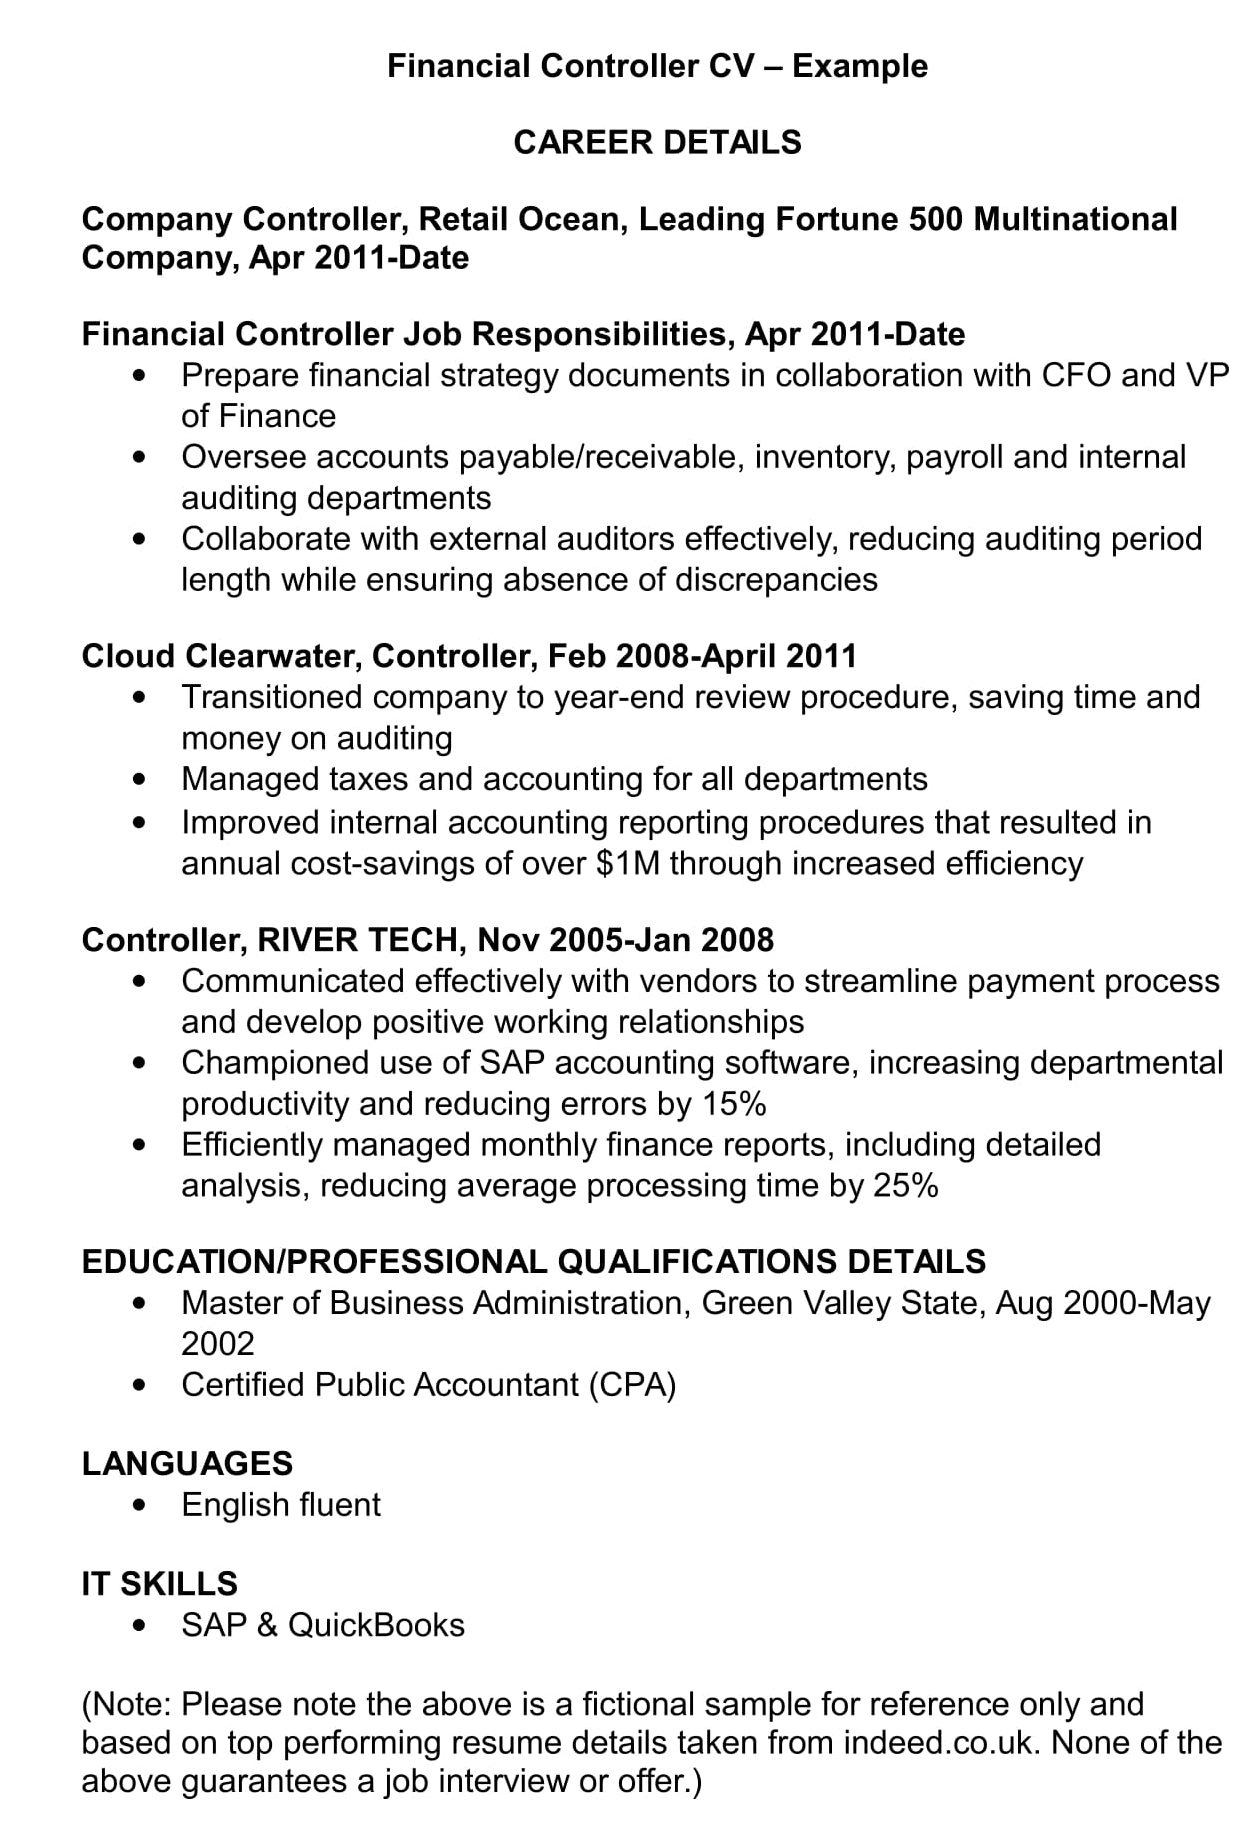 Financial Controller CV Template  Audit, Finance & Management Jobs With Regard To Financial Controller Job Description Template